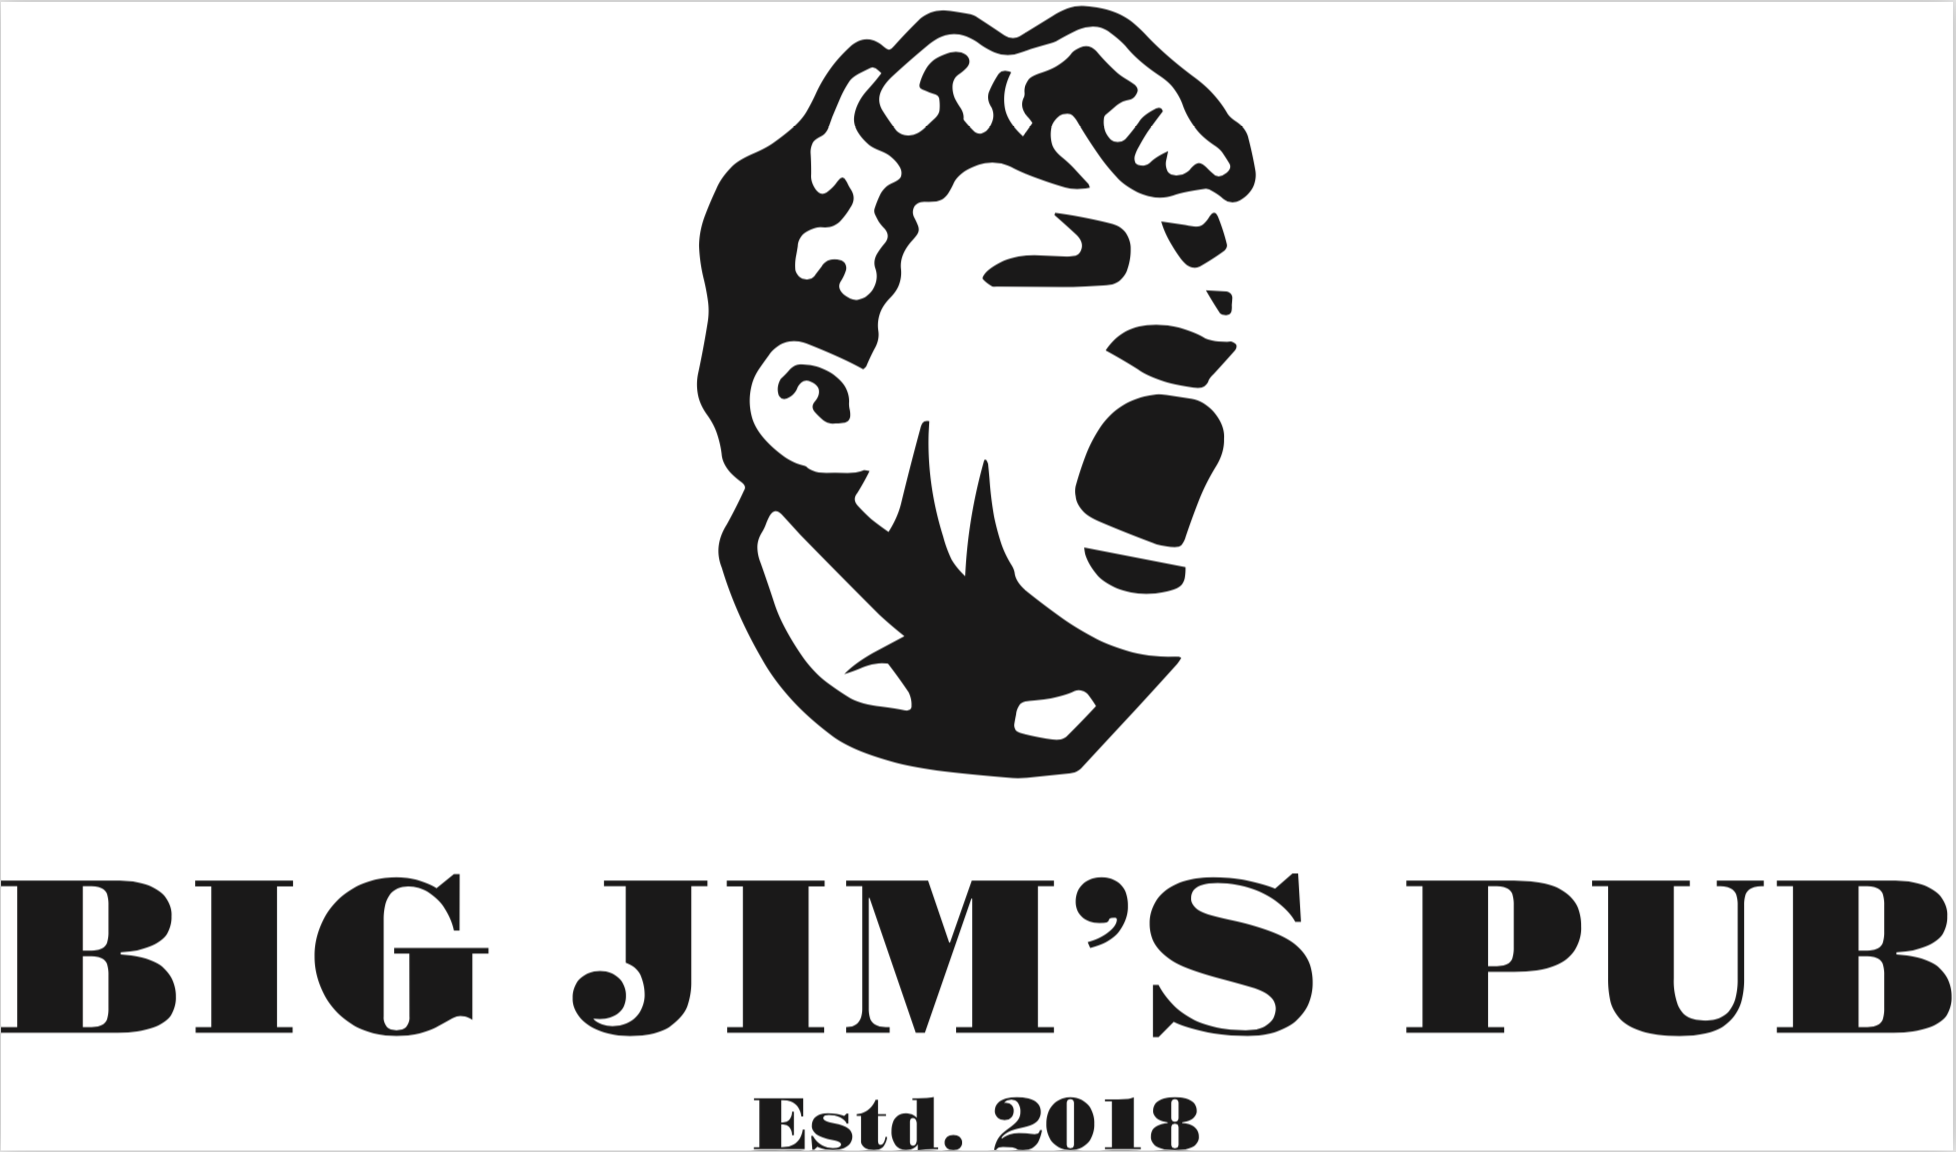 Биг Джим паб. Big Jim s pub Москва. Big Jims pub Никитская. Big Jims pub лого. Jims pub